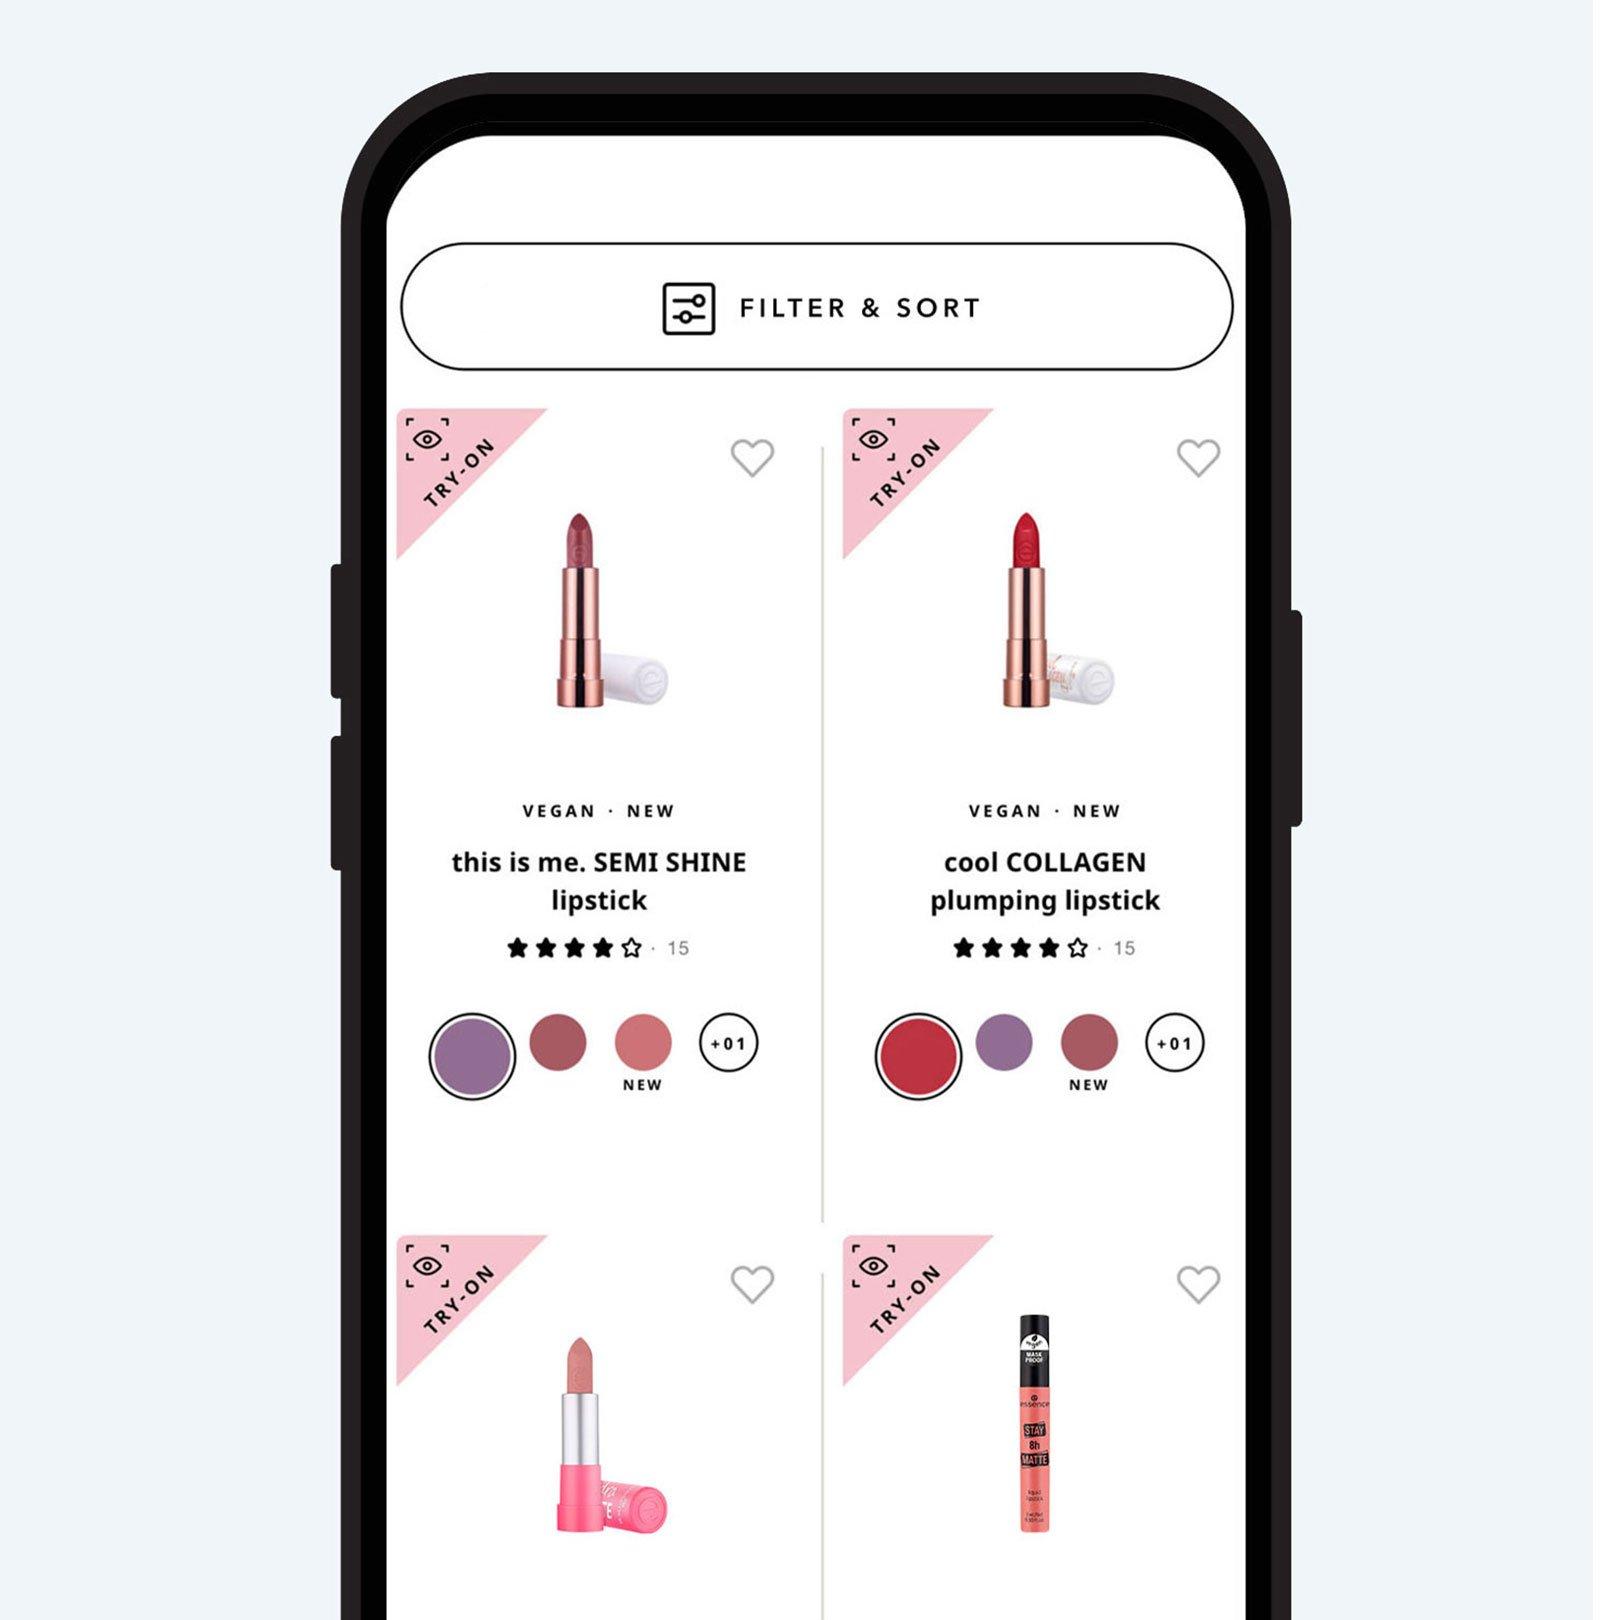 Virtuel makeuptest fra essence: Produktoversigt